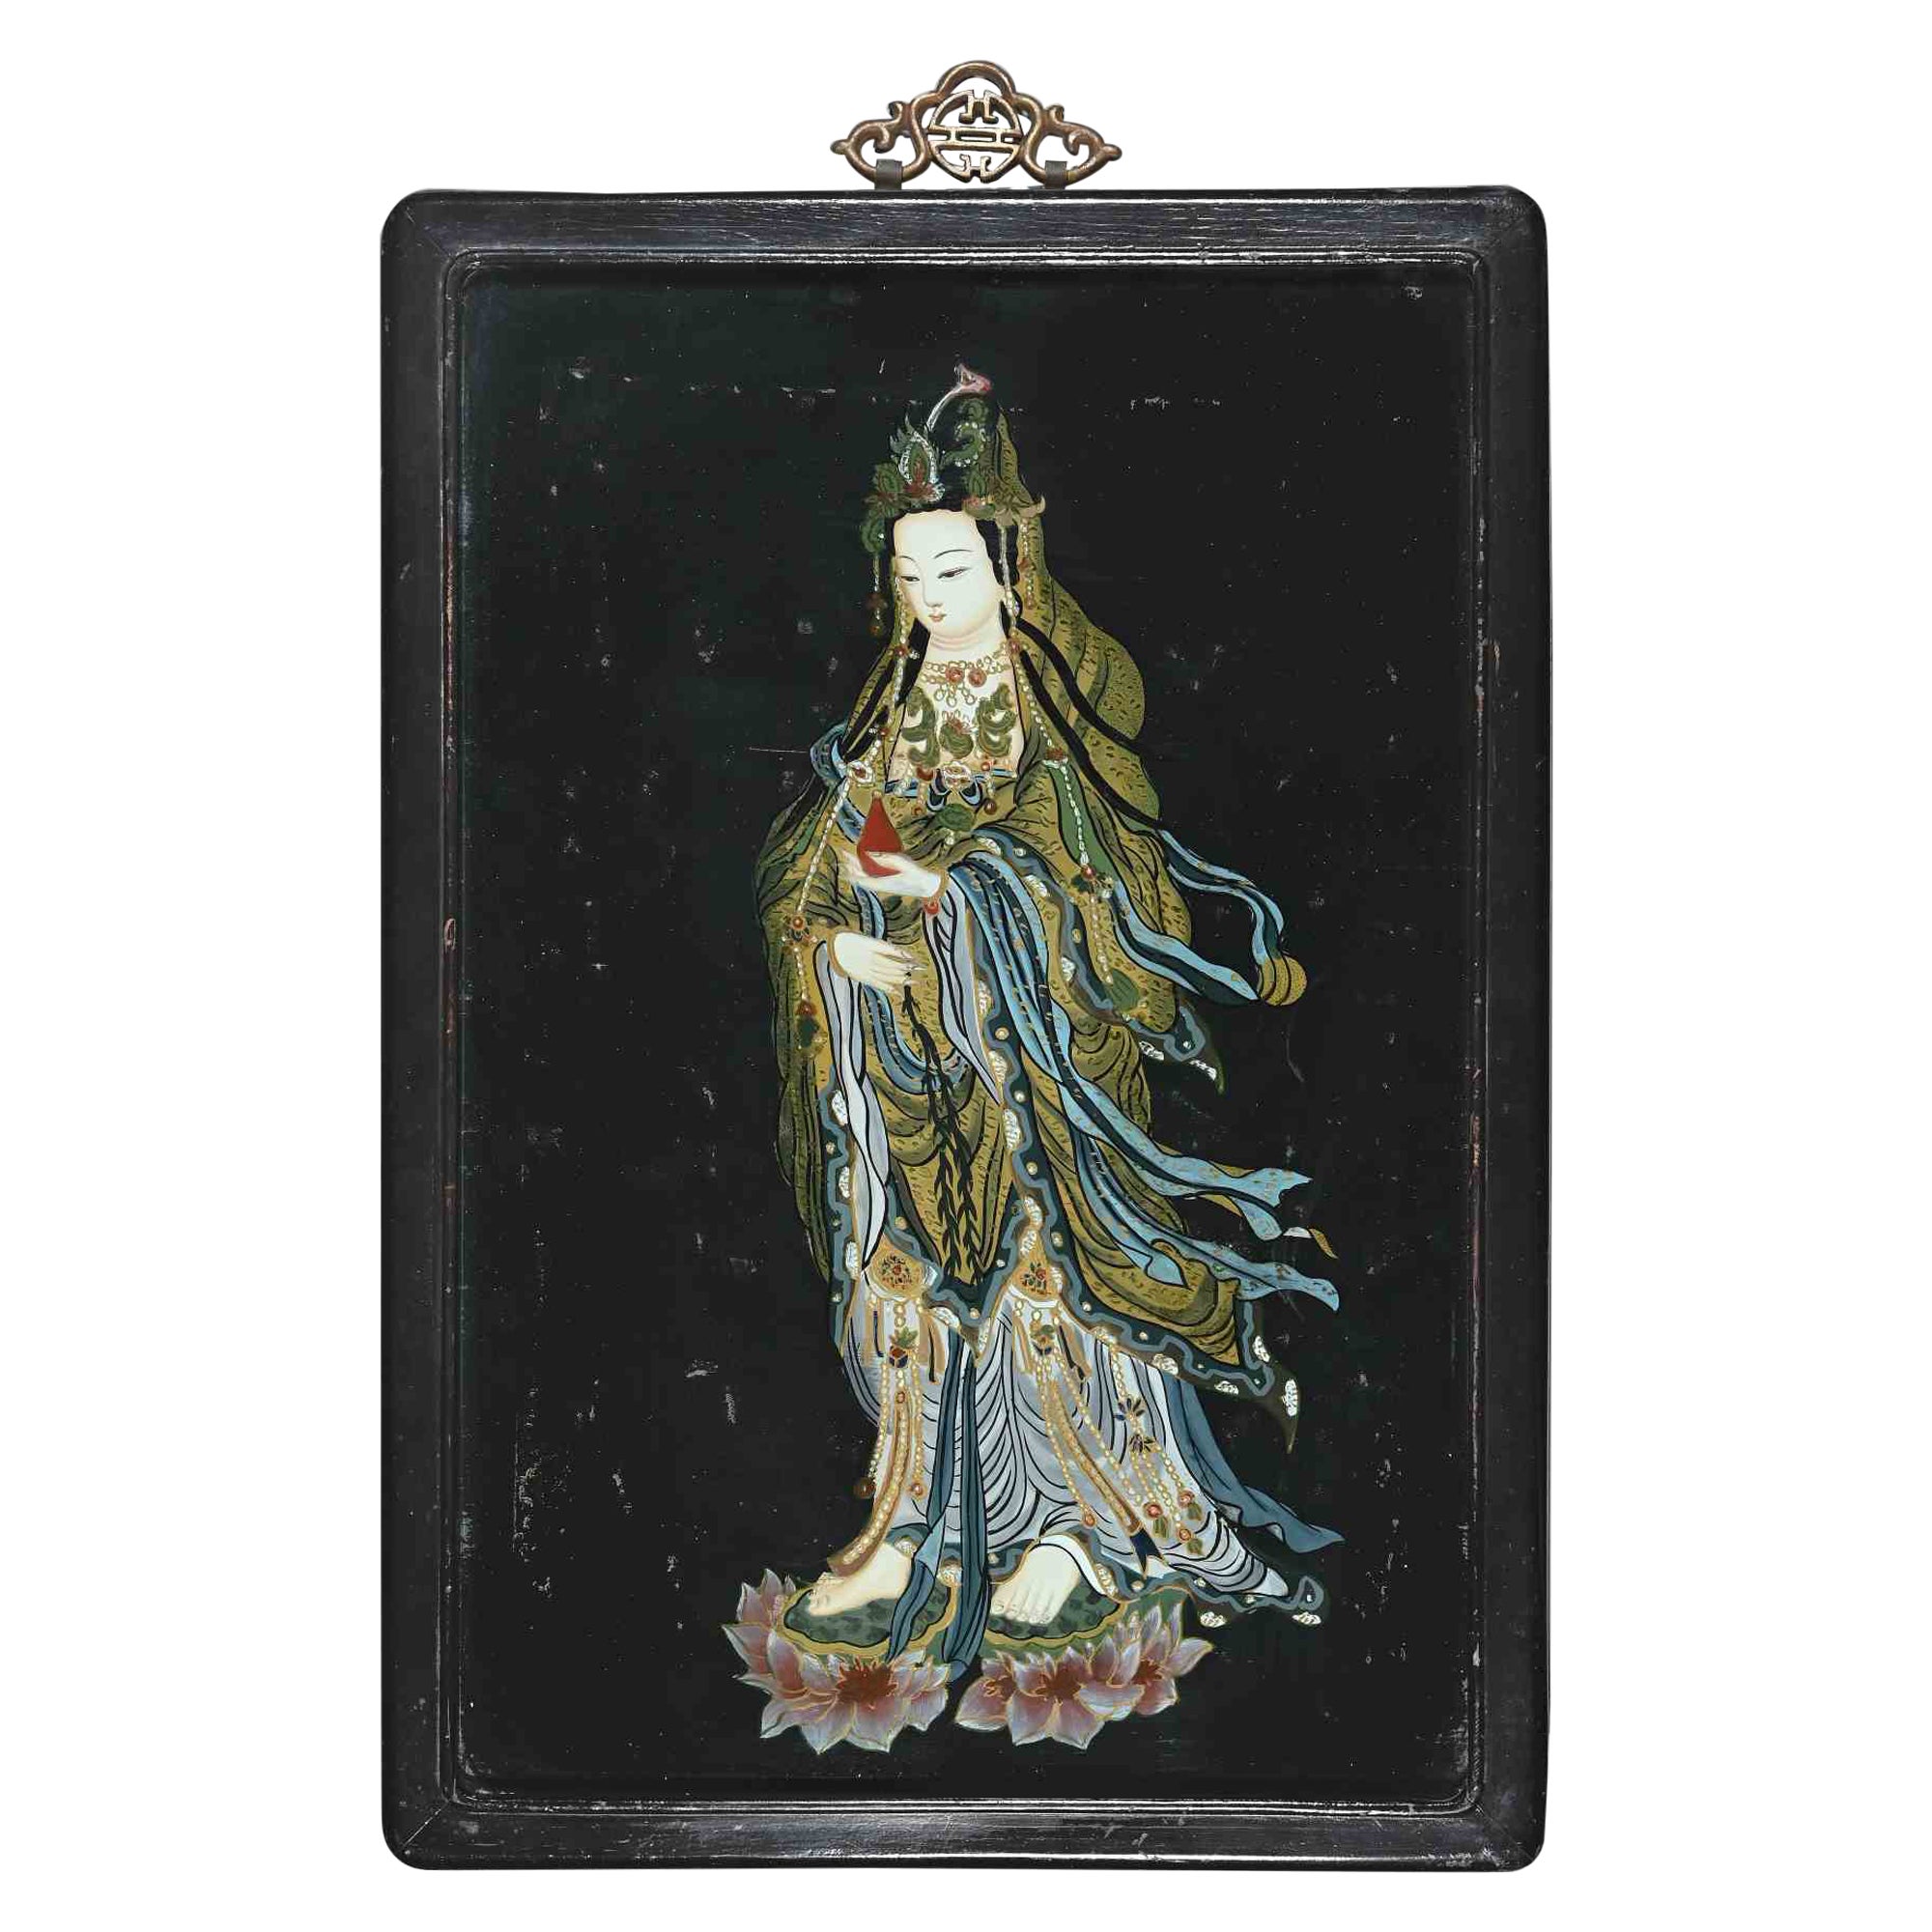 Orientalische Frau, Emaille auf Karton, frühes 20. Jahrhundert